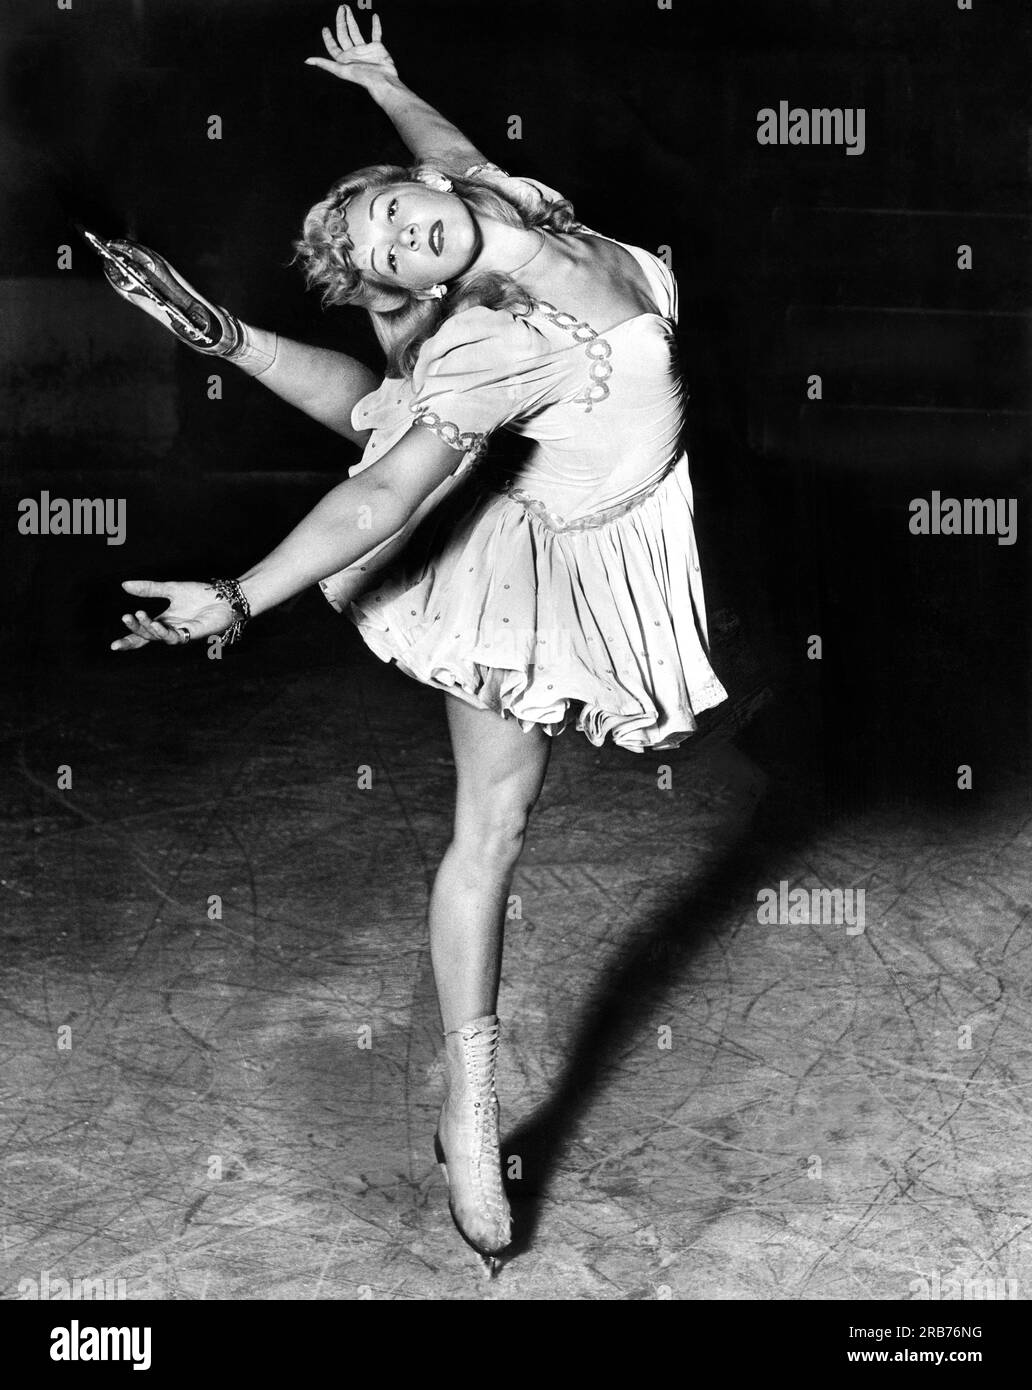 California: 12 agosto 1942. Belita, la Ballerina bionda dei Rinks, è la star degli spettacoli di ghiaccio dove appare. Foto Stock